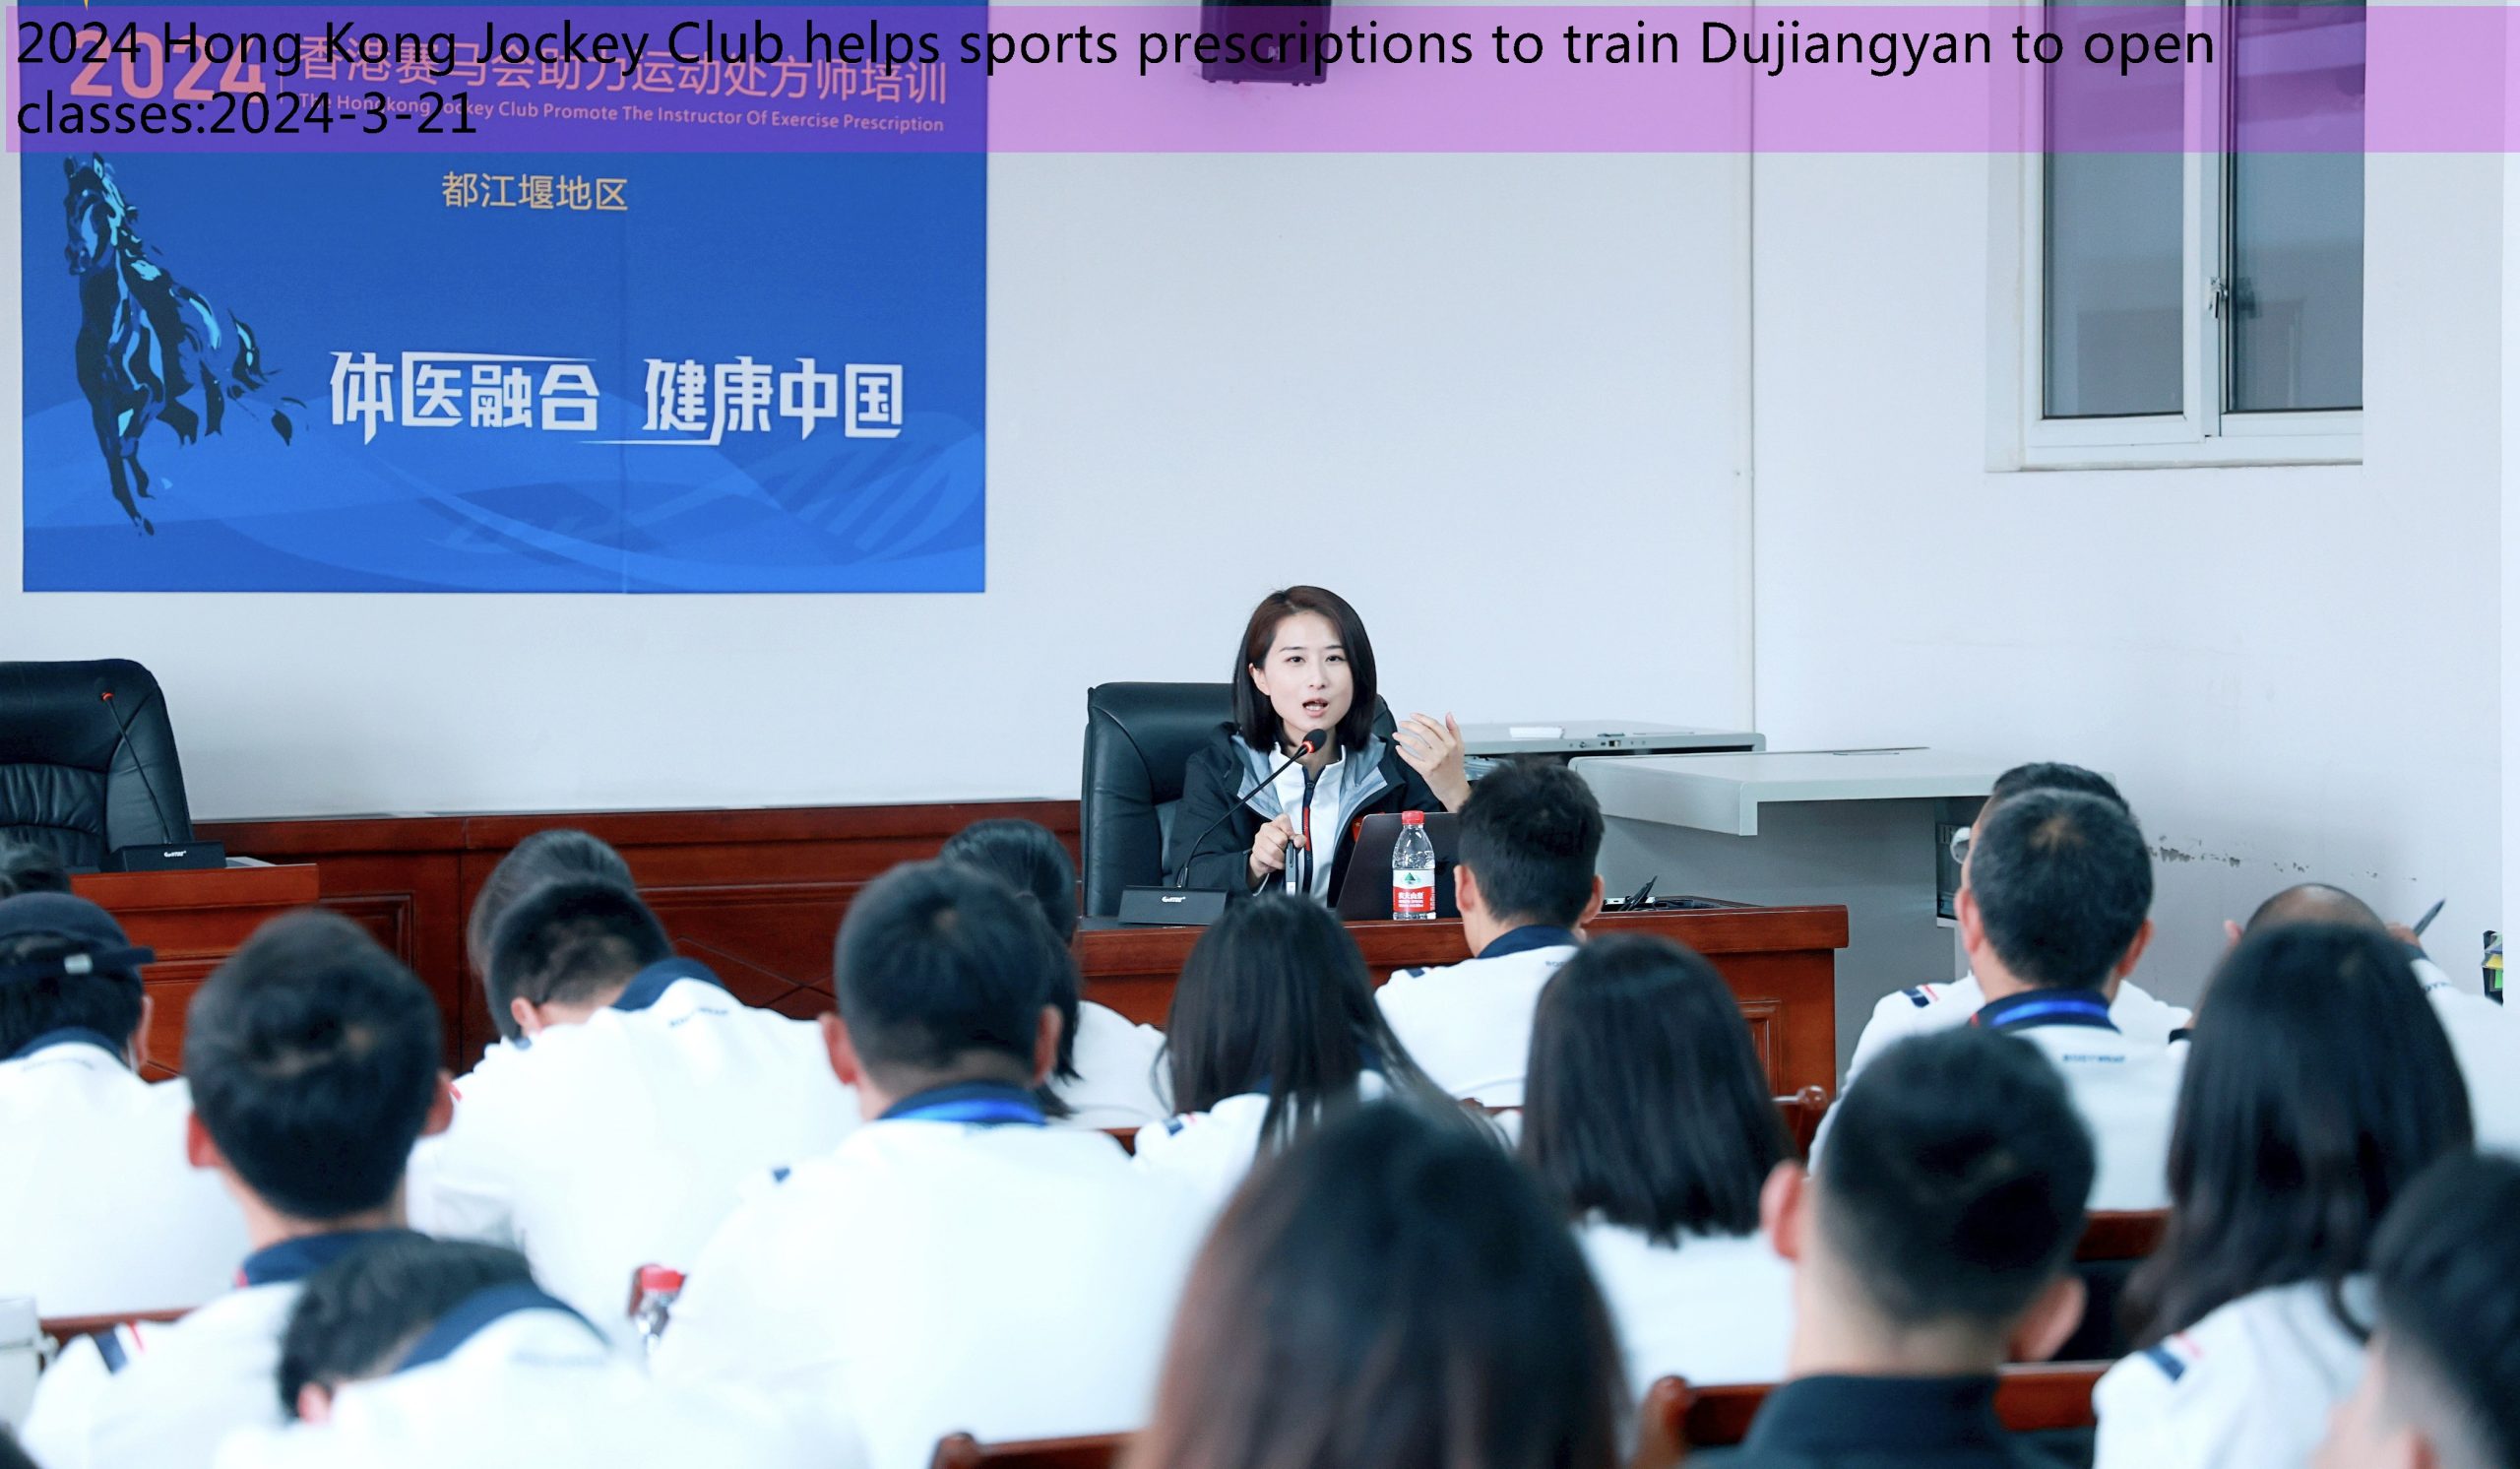 2024 Hong Kong Jockey Club helps sports prescriptions to train Dujiangyan to open classes